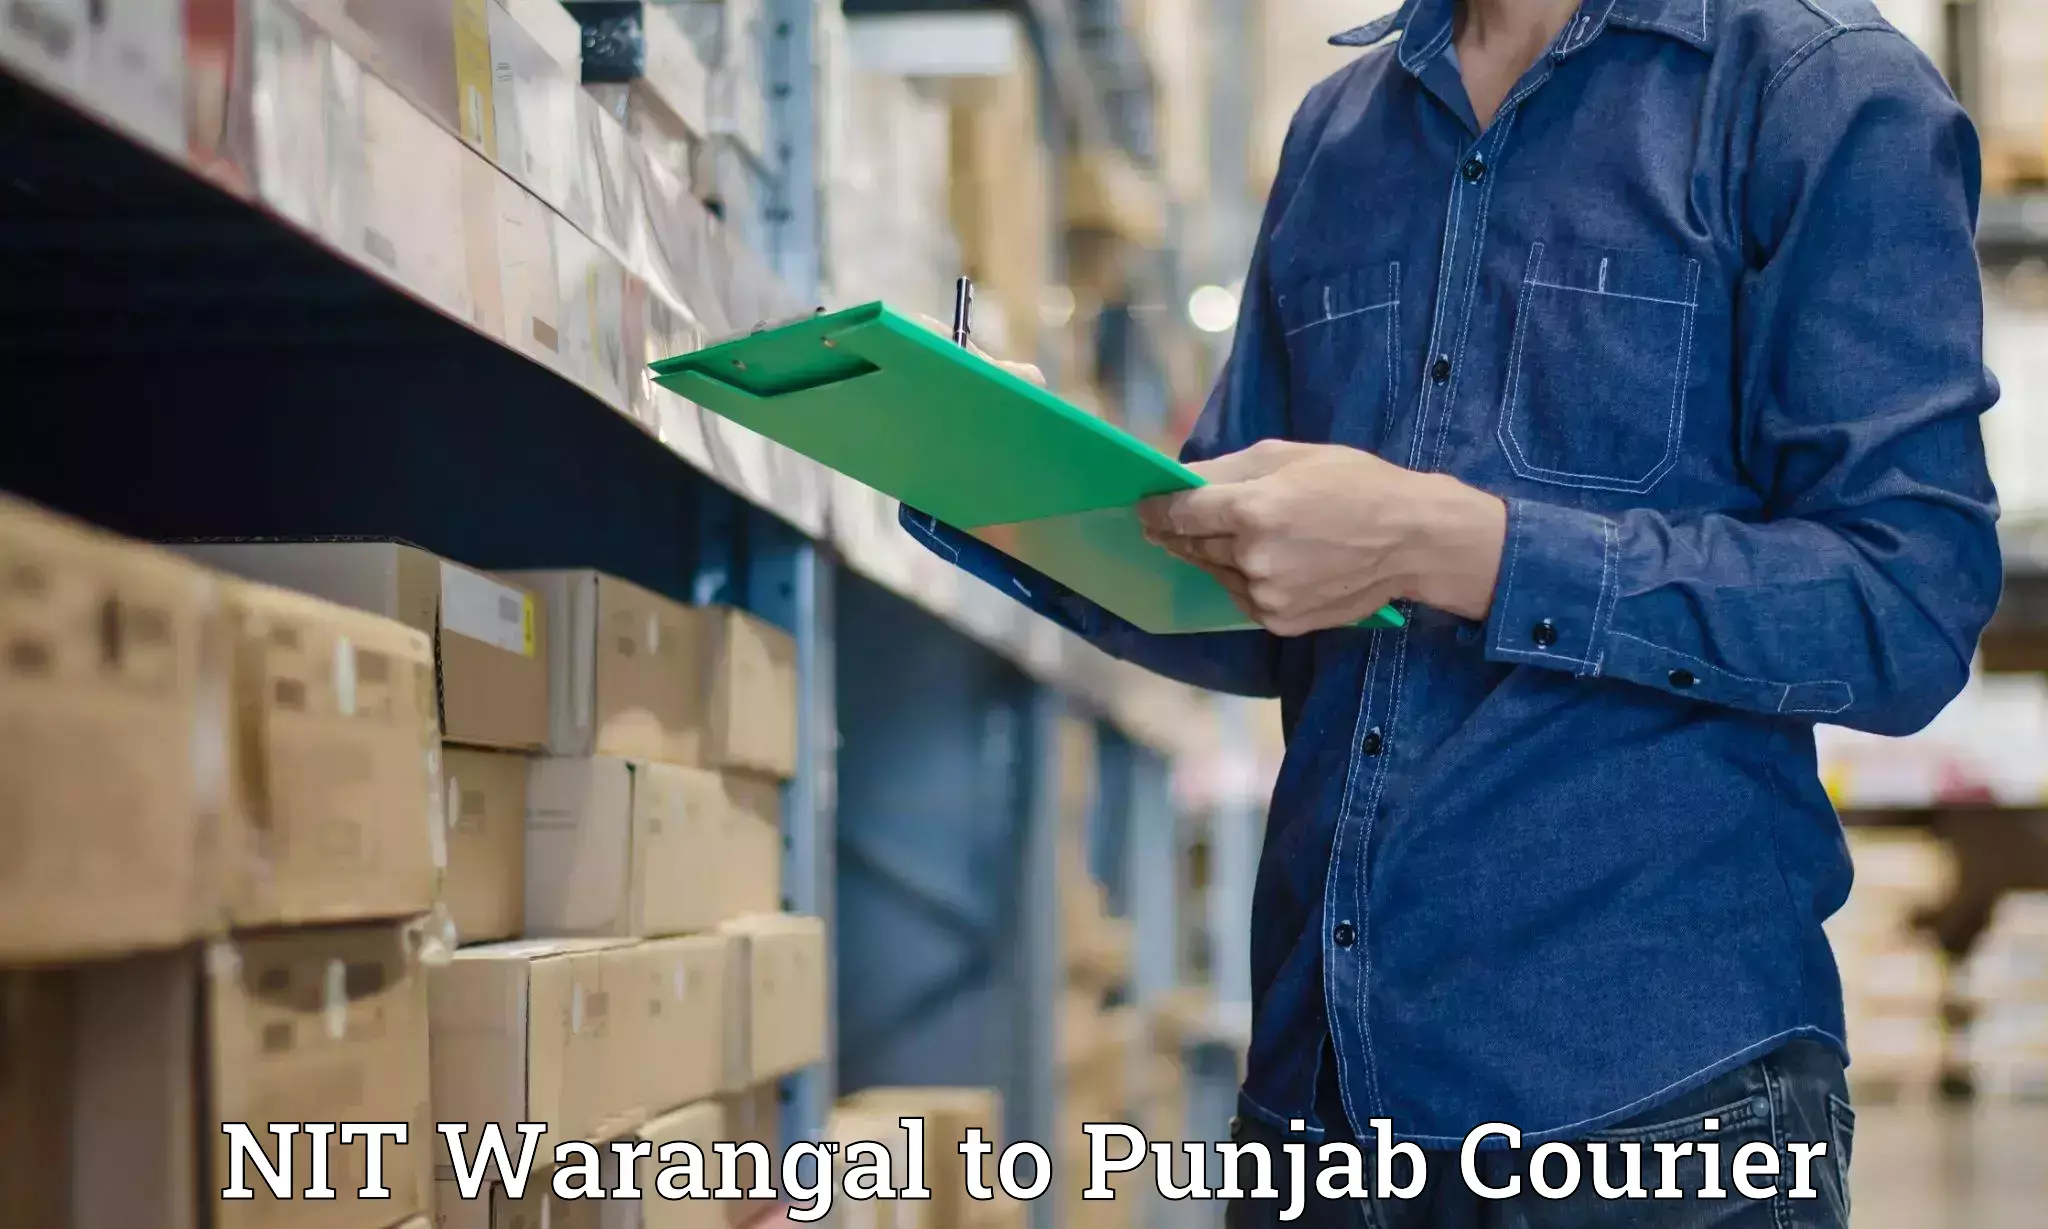 Courier service partnerships NIT Warangal to Punjab